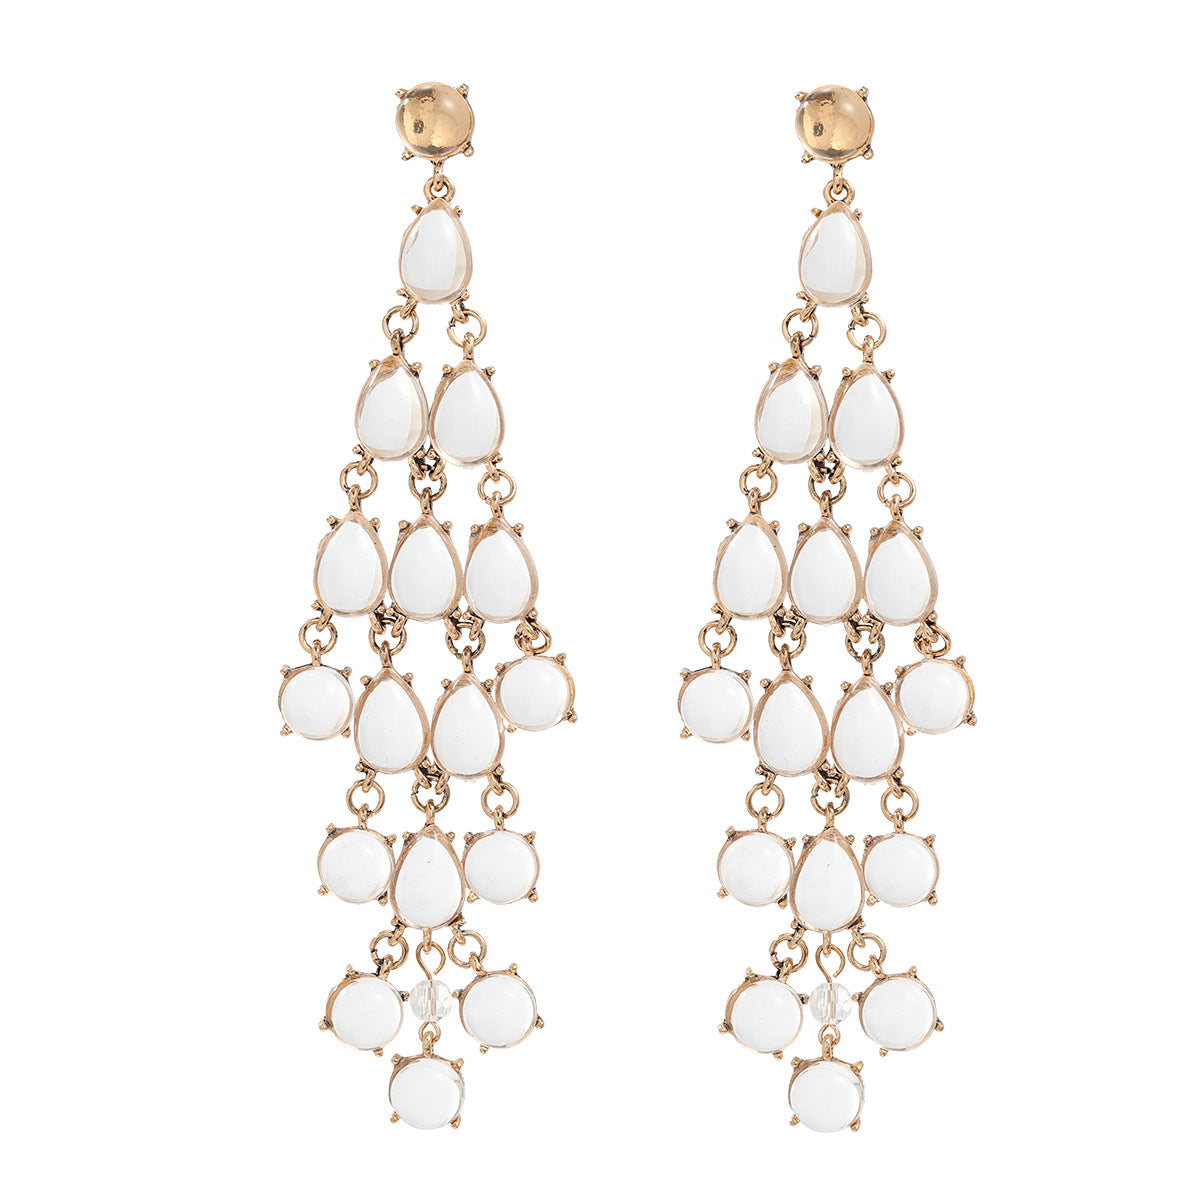 Women's Fashion Tassel Drop-shaped Resin Bohemian Ornament Earrings